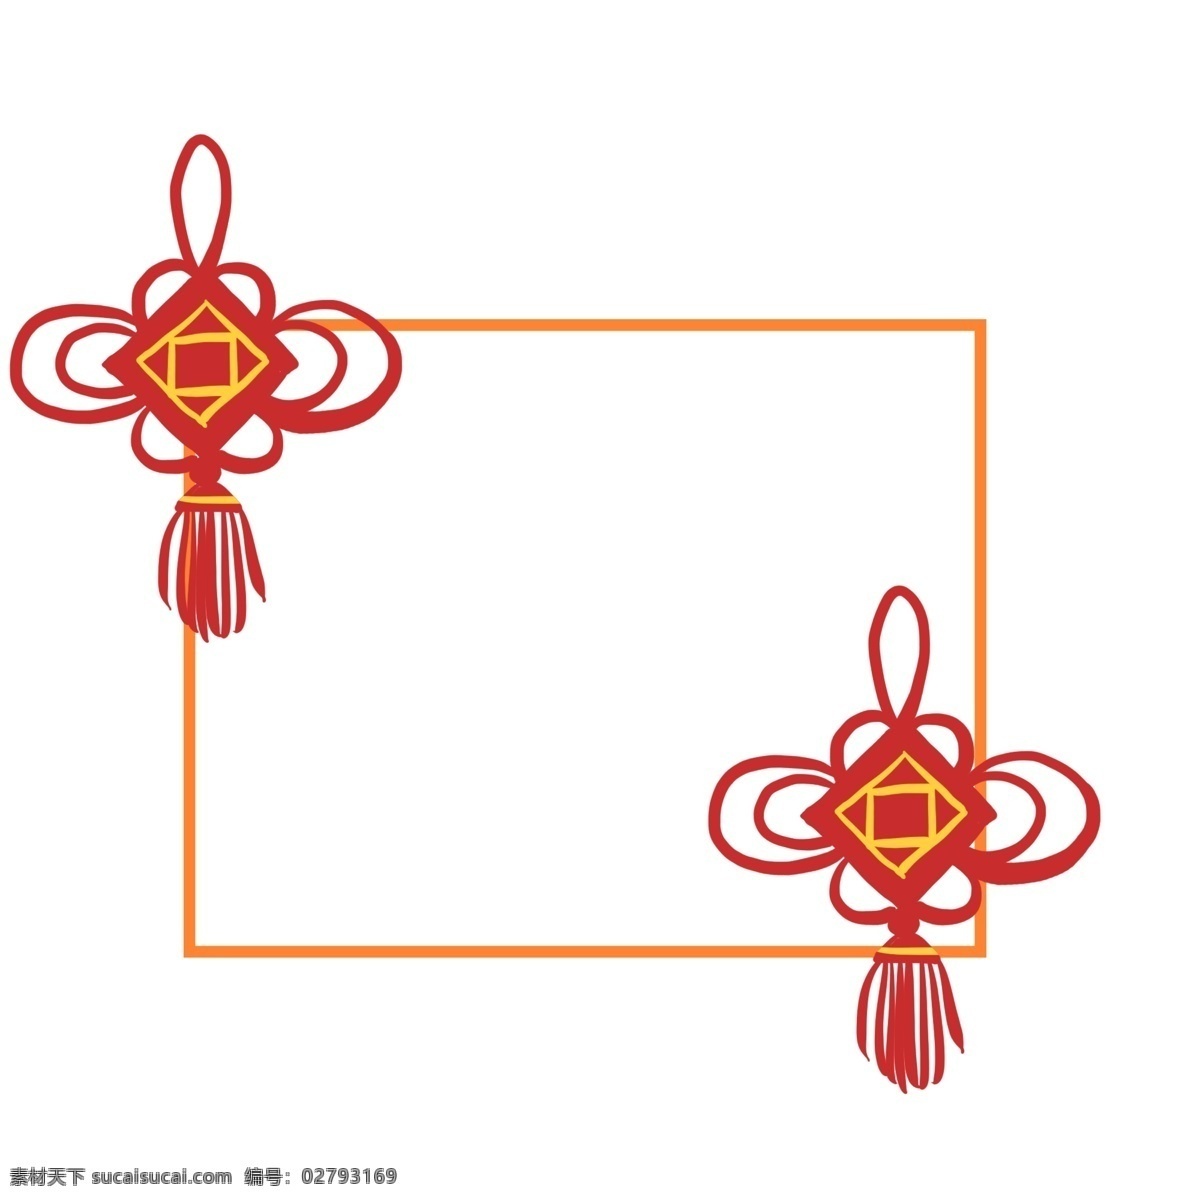 传统 红色 中国结 挂件 边框 插画 手绘 矢量图 中国风 边框装饰 边框设计